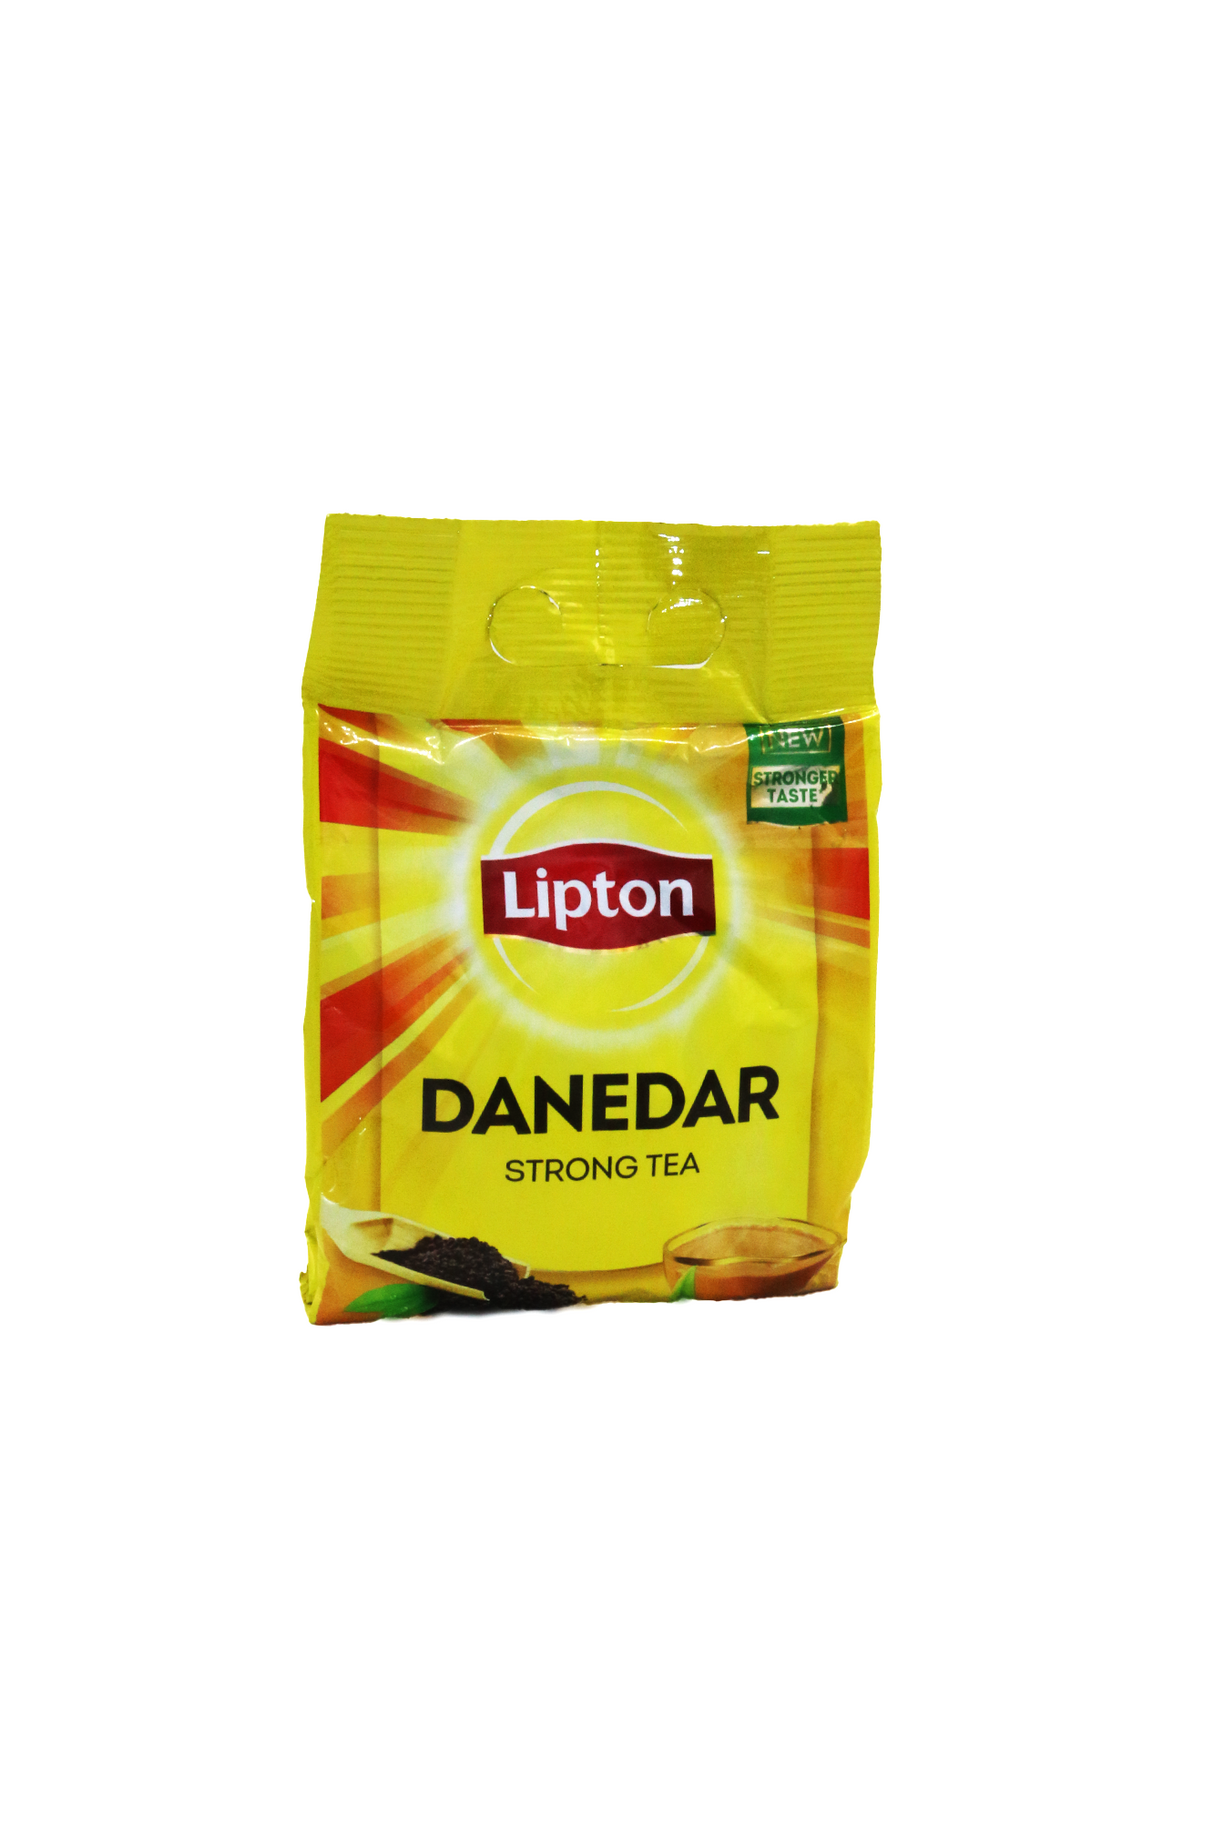 lipton danedar strong tea 430g